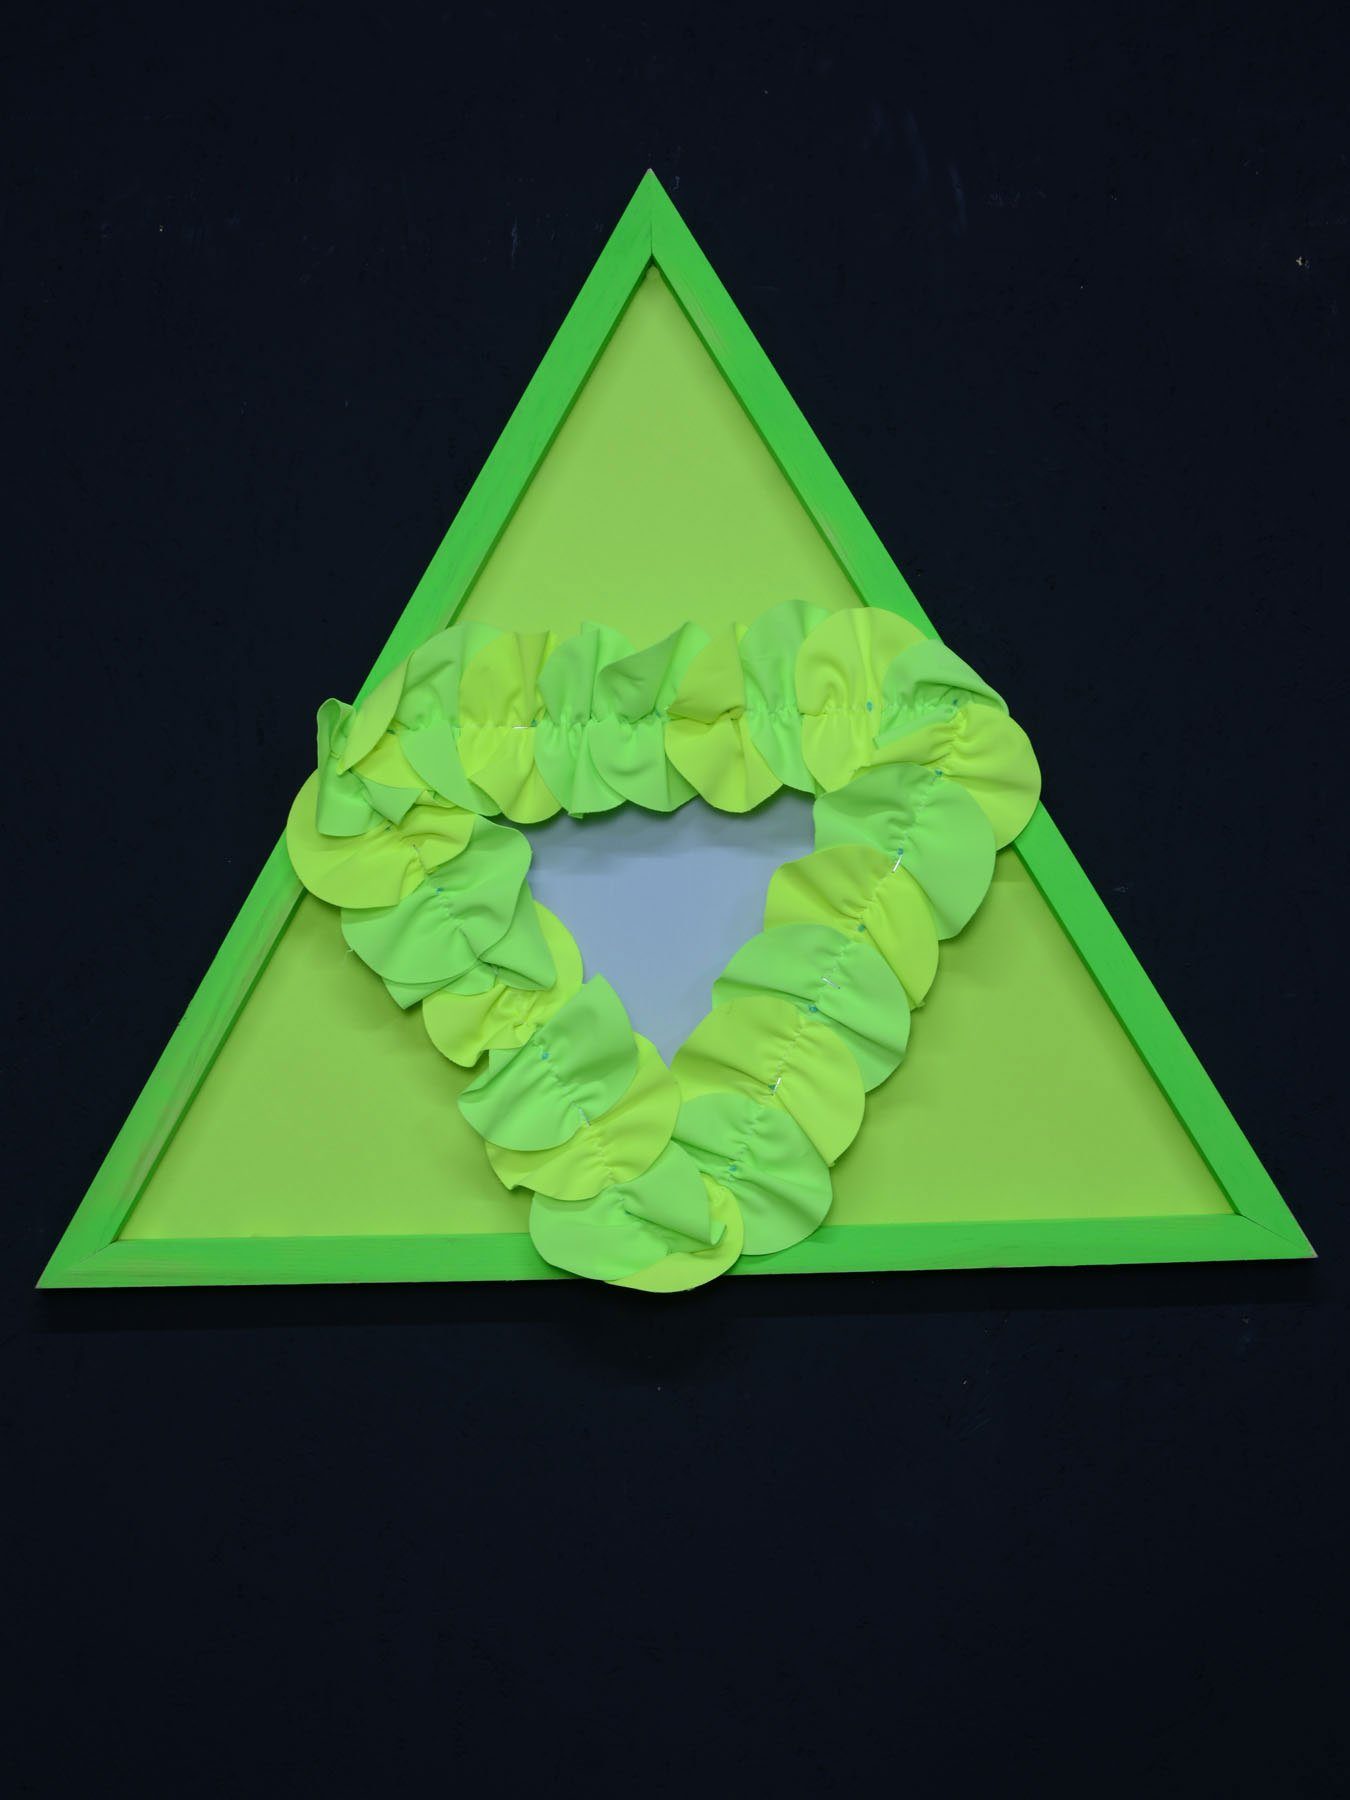 PSYWORK Dekoobjekt Schwarzlicht StringArt Dreieck-Mind Change "Apple Tree Triangle" 65cm, UV-aktiv, leuchtet unter Schwarzlicht